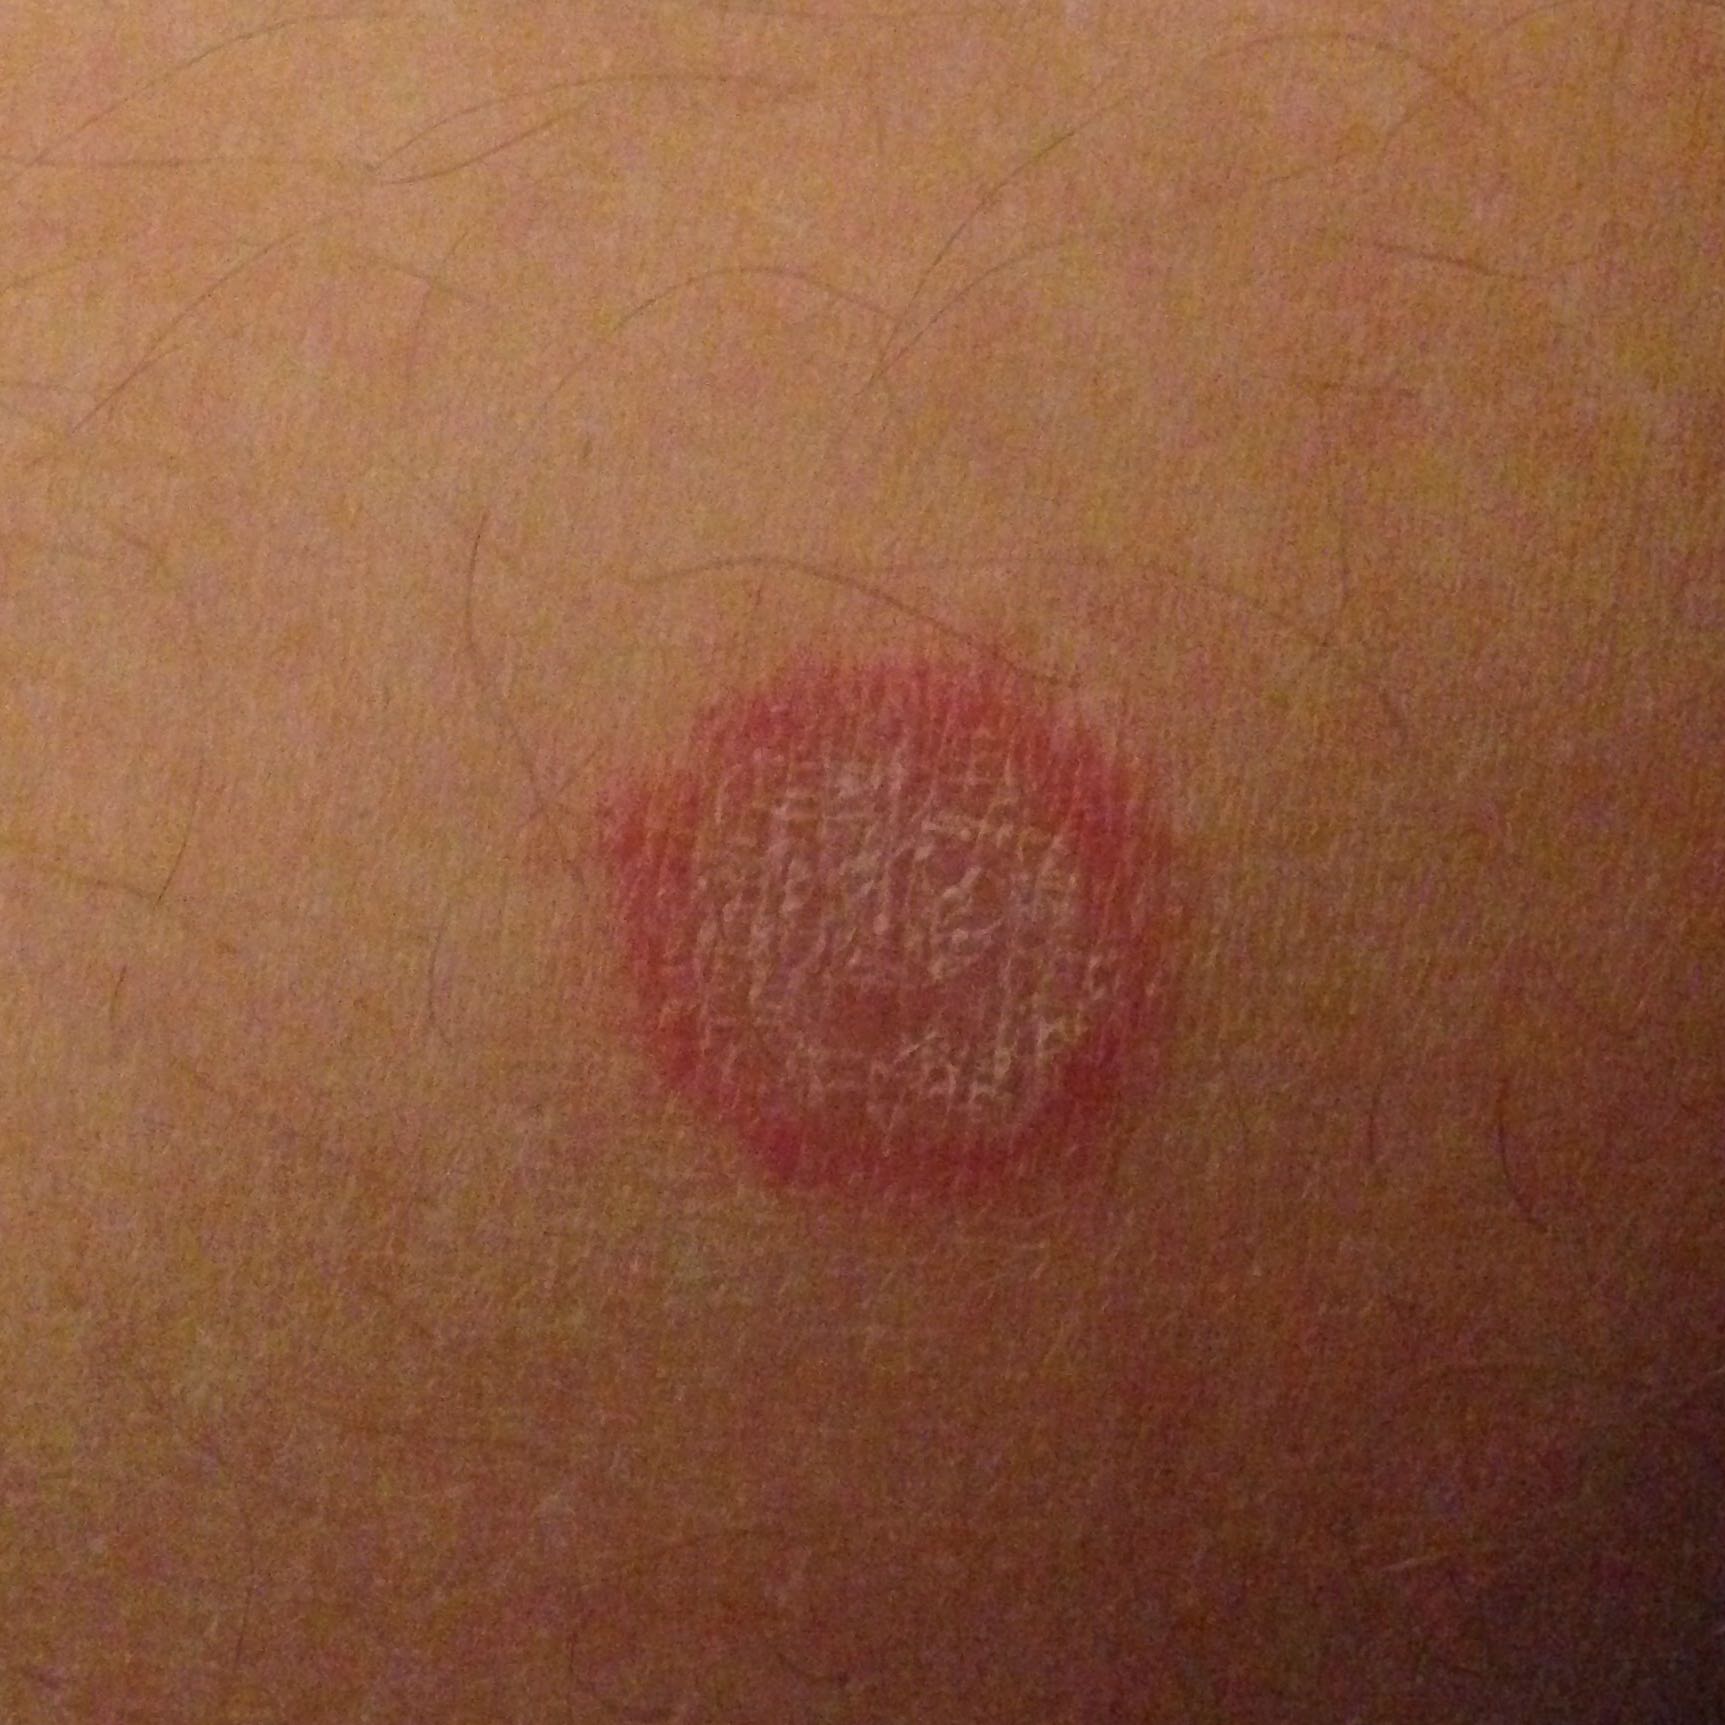 35++ Kreisrunder roter fleck auf der haut bilder , Roter rauer Kreis auf der Haut! (Gesundheit, Medizin, rot)